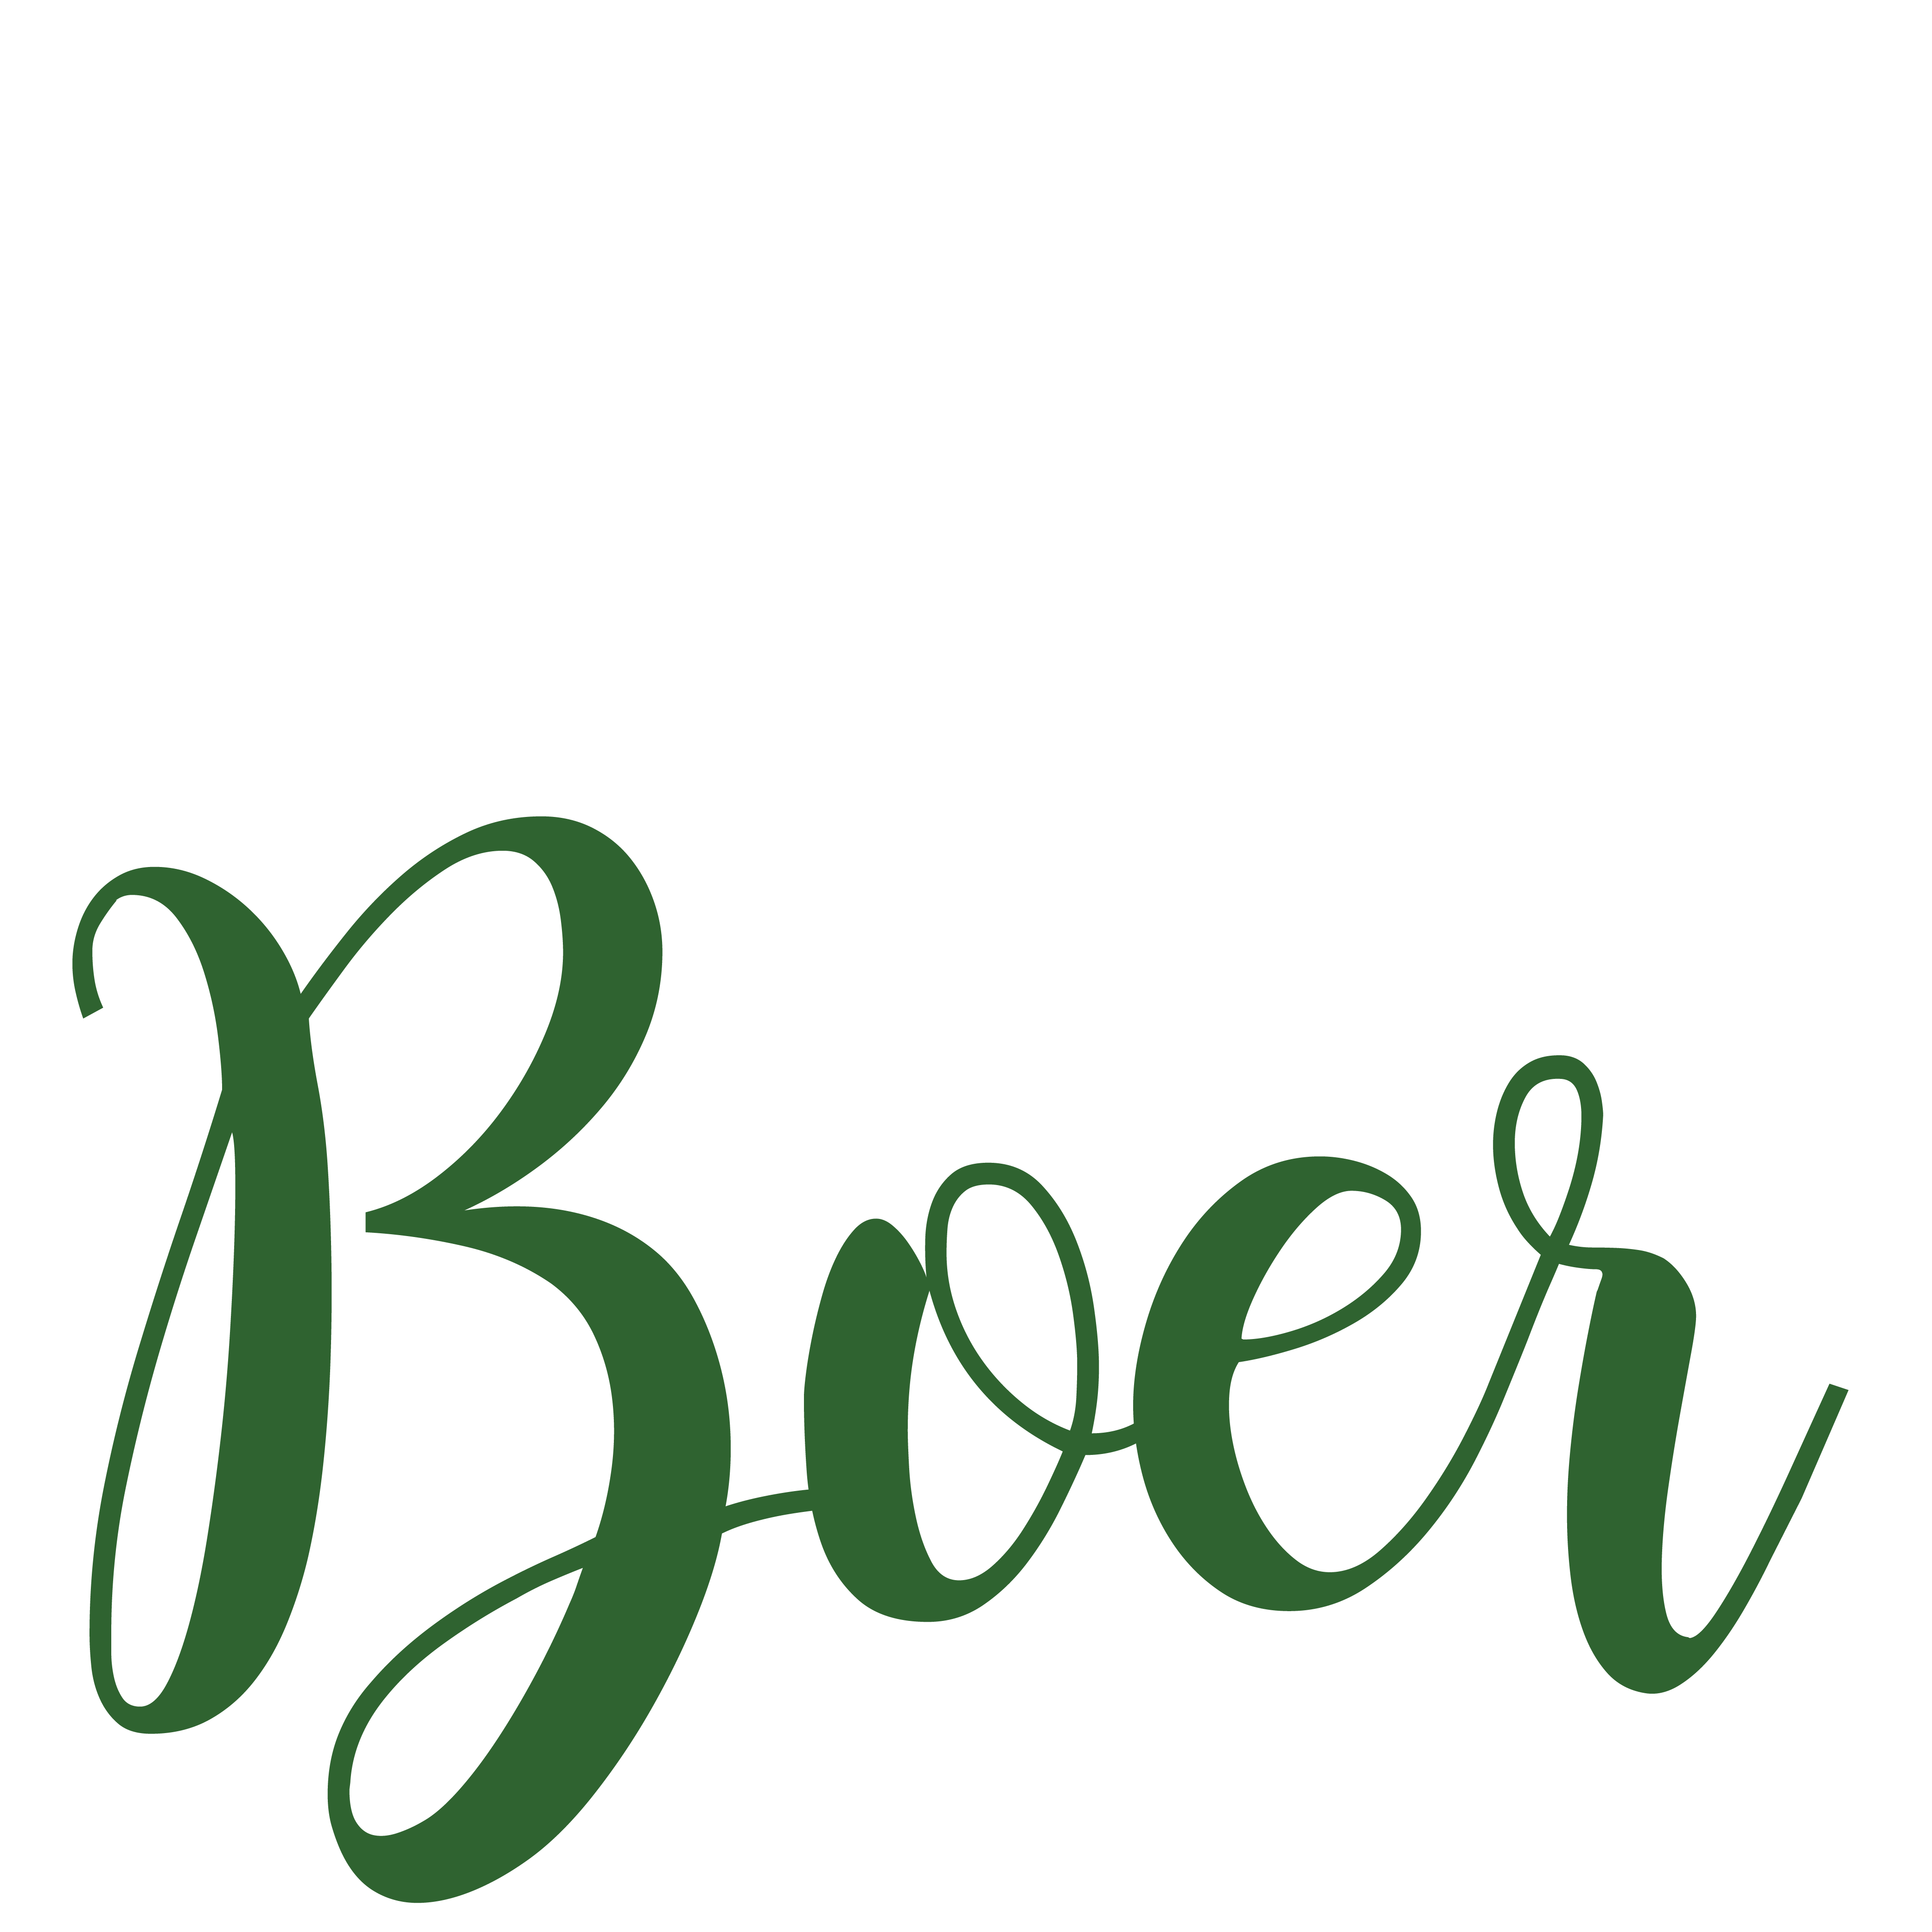 Café de Boer